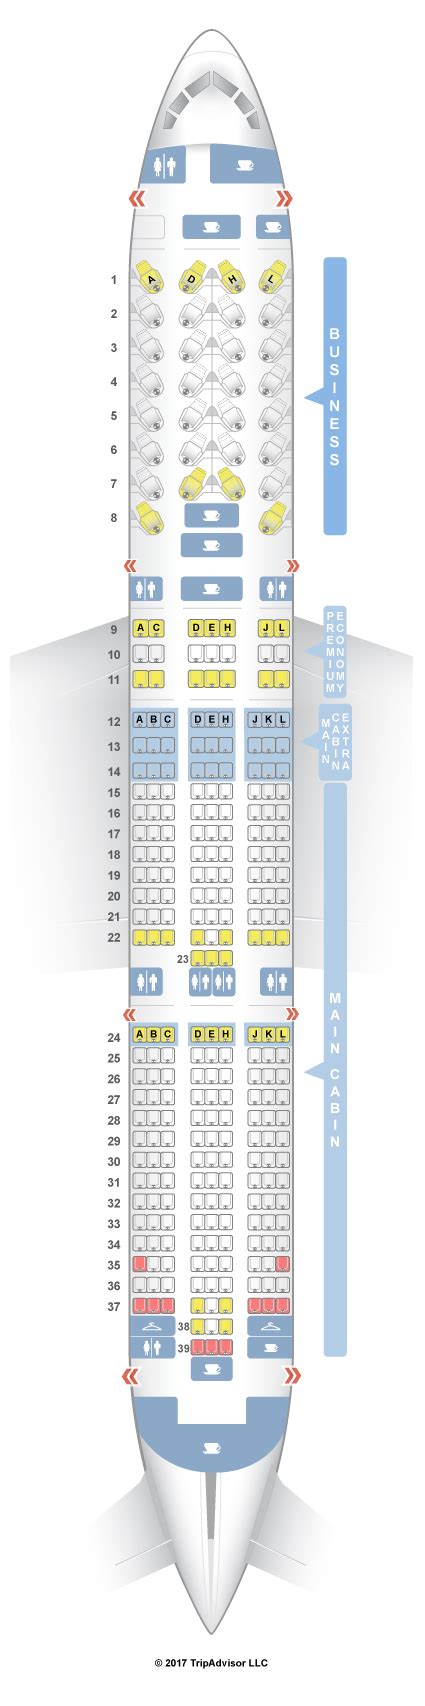 Seatguru Seat Map American Airlines Boeing 787 9 789